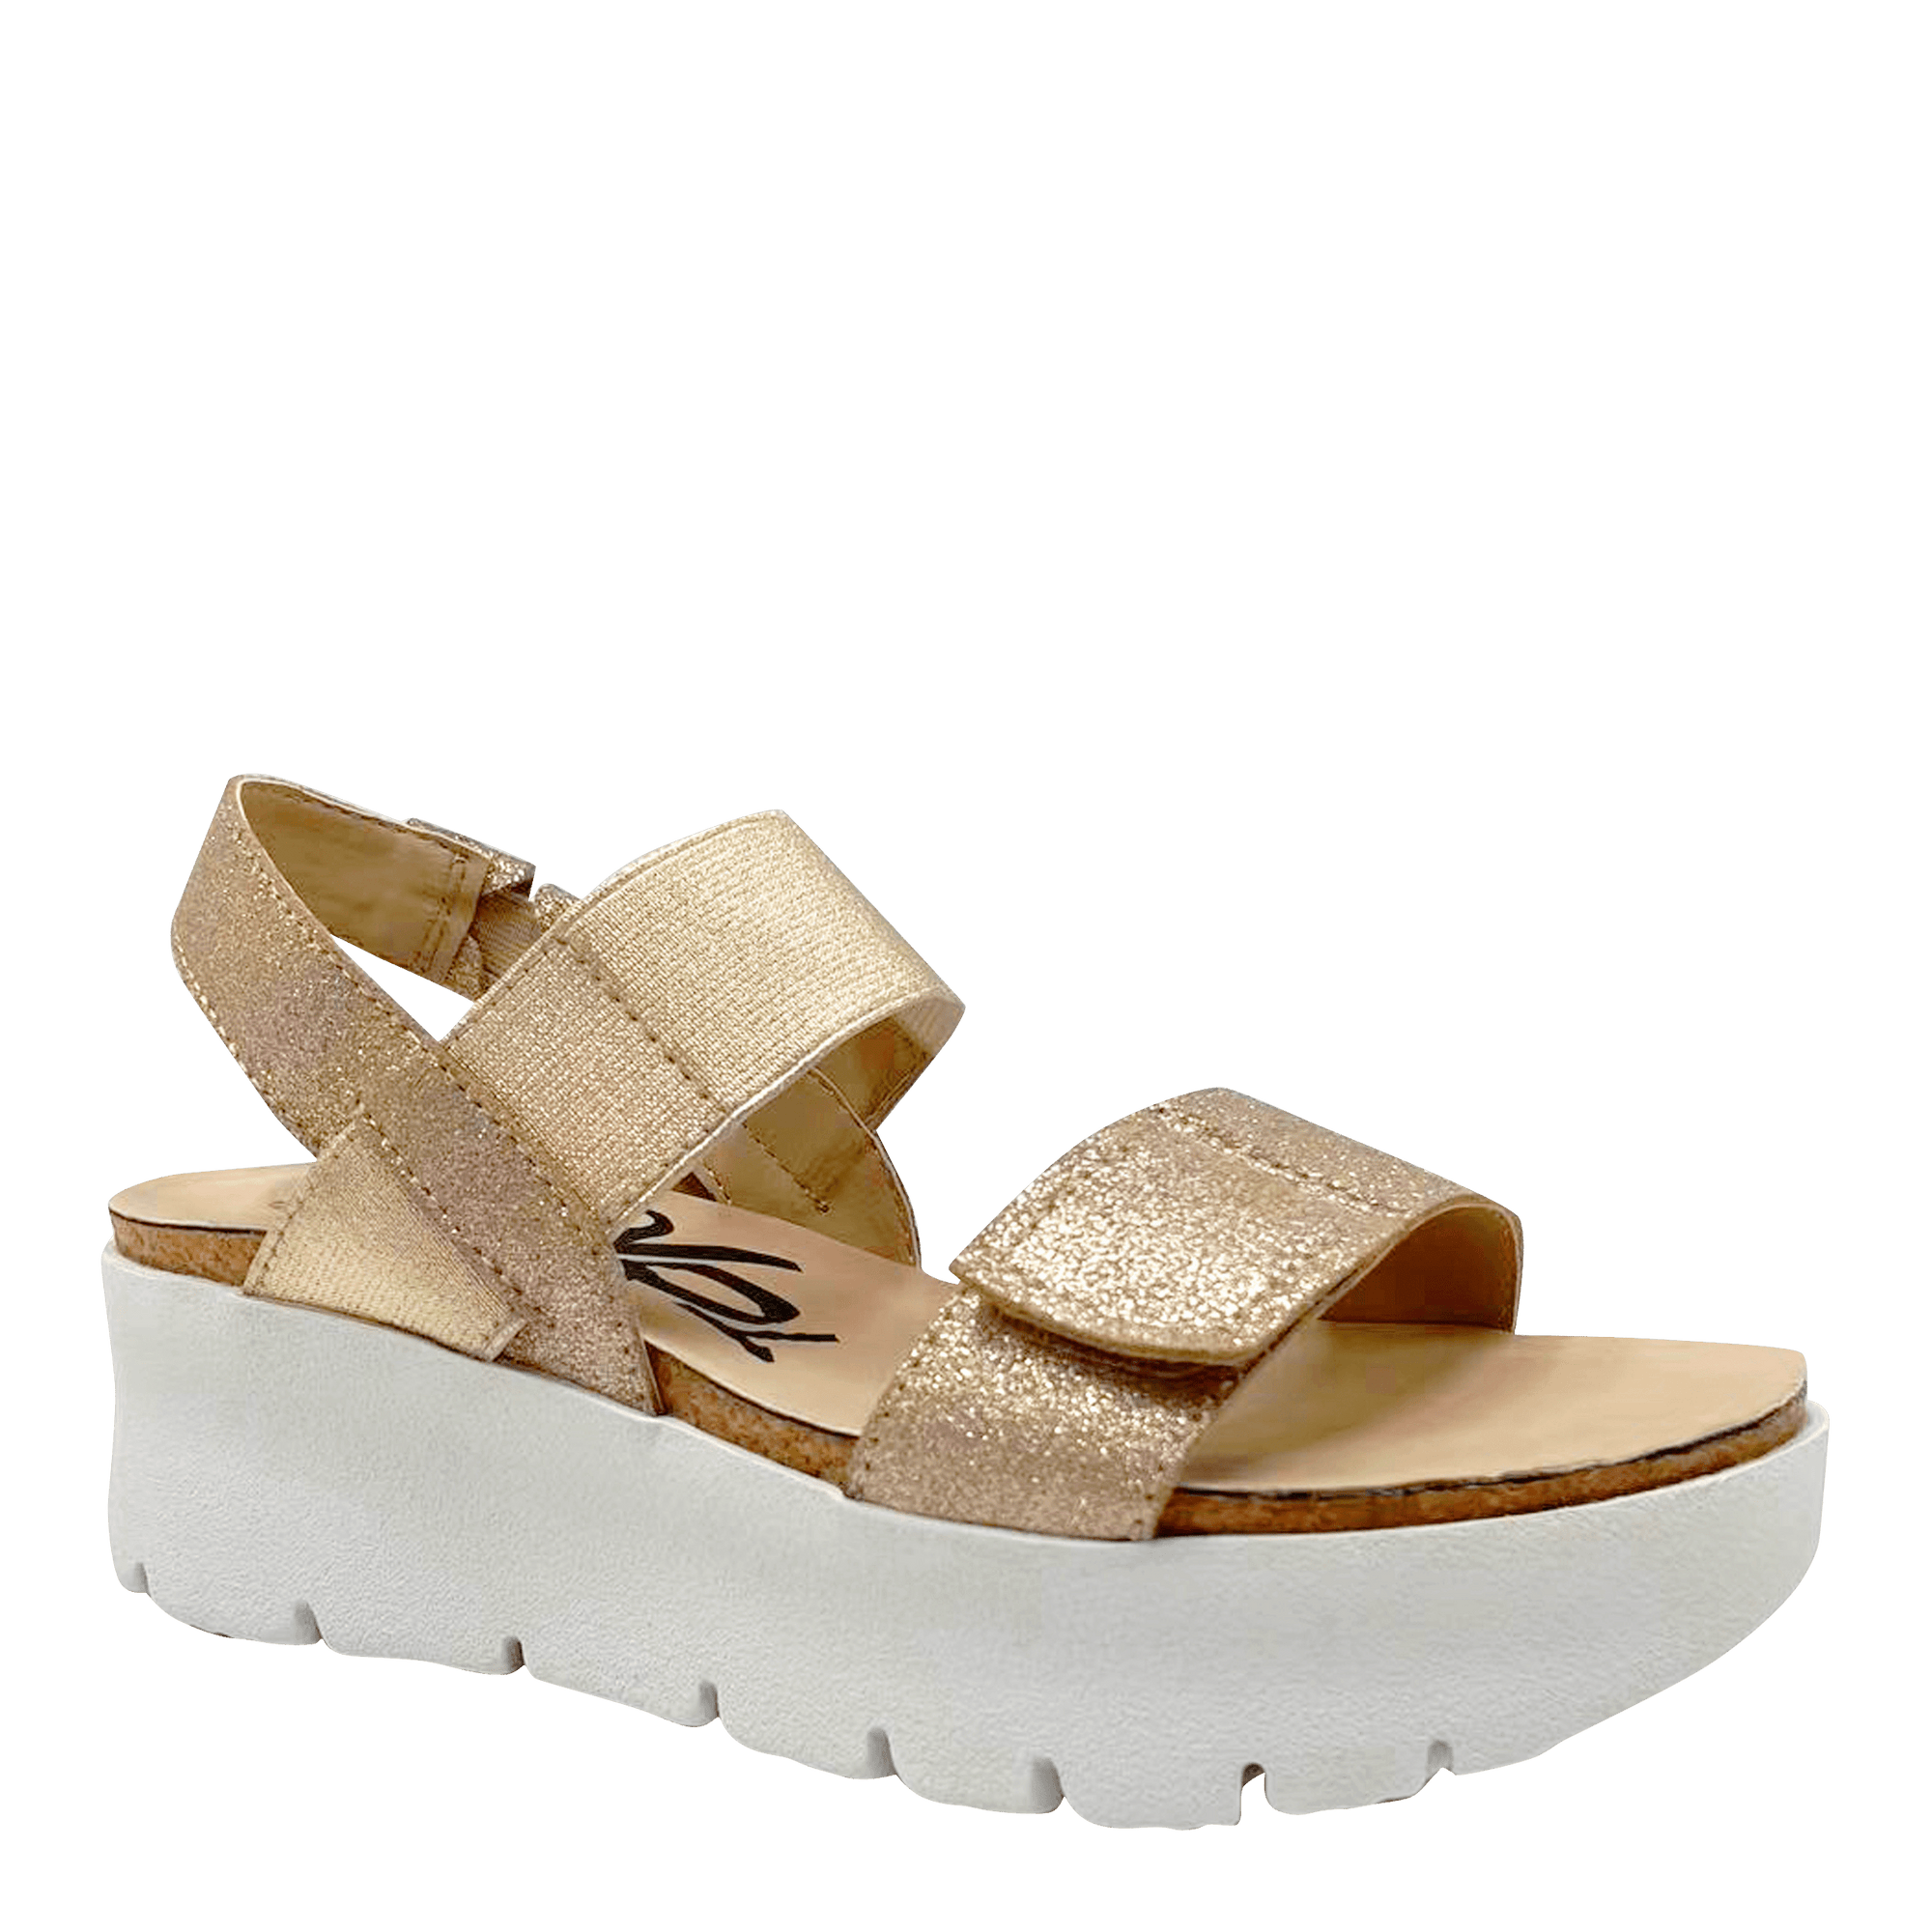 NOVA in GOLD Platform Sandals